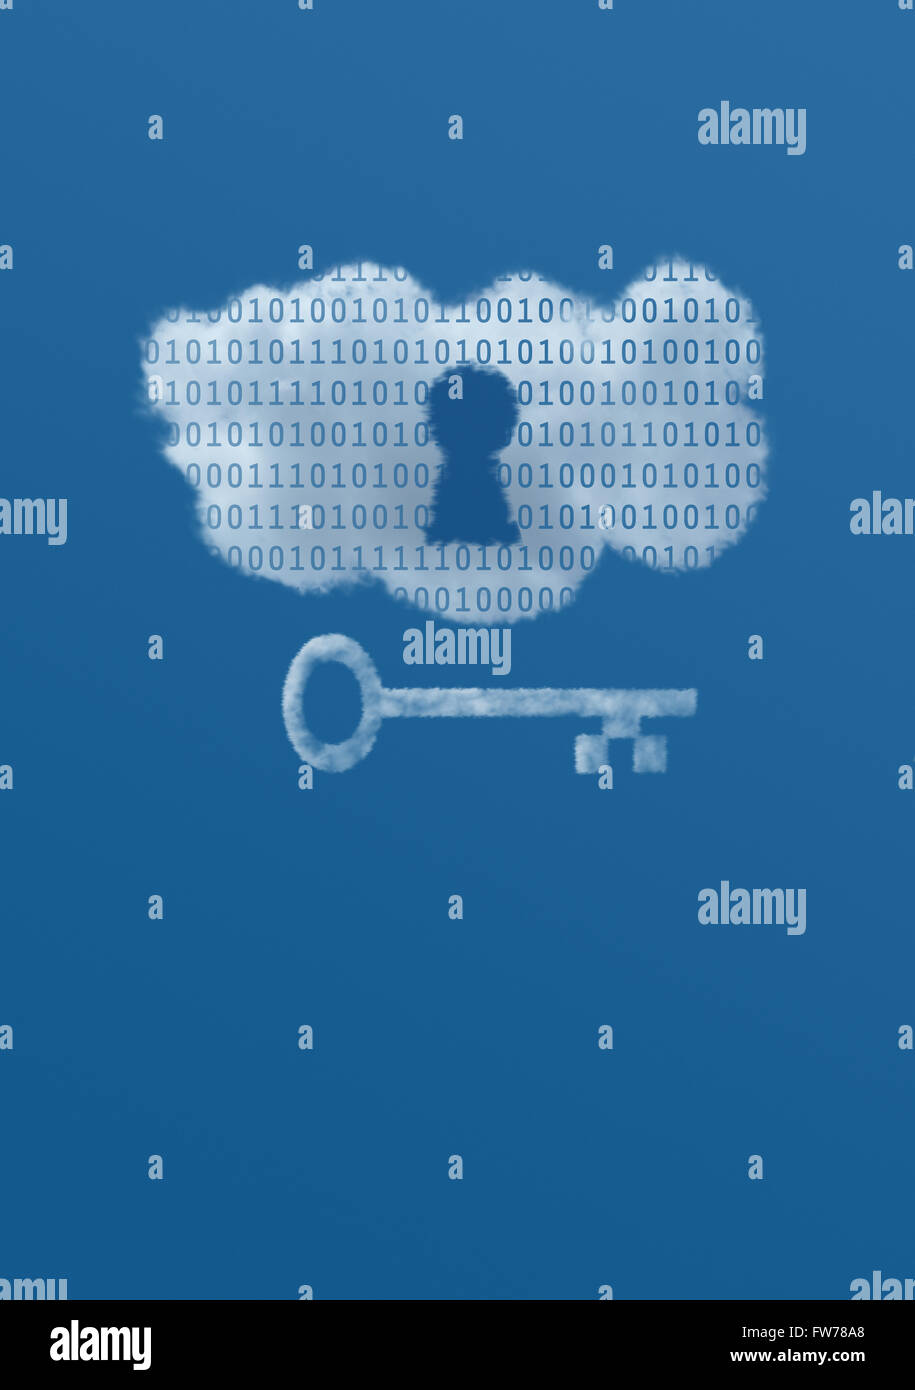 Una nube blanca con datos binarios en un cielo azul tiene una cerradura y llave ilustrando la idea de la seguridad de los datos en la Nube. Foto de stock